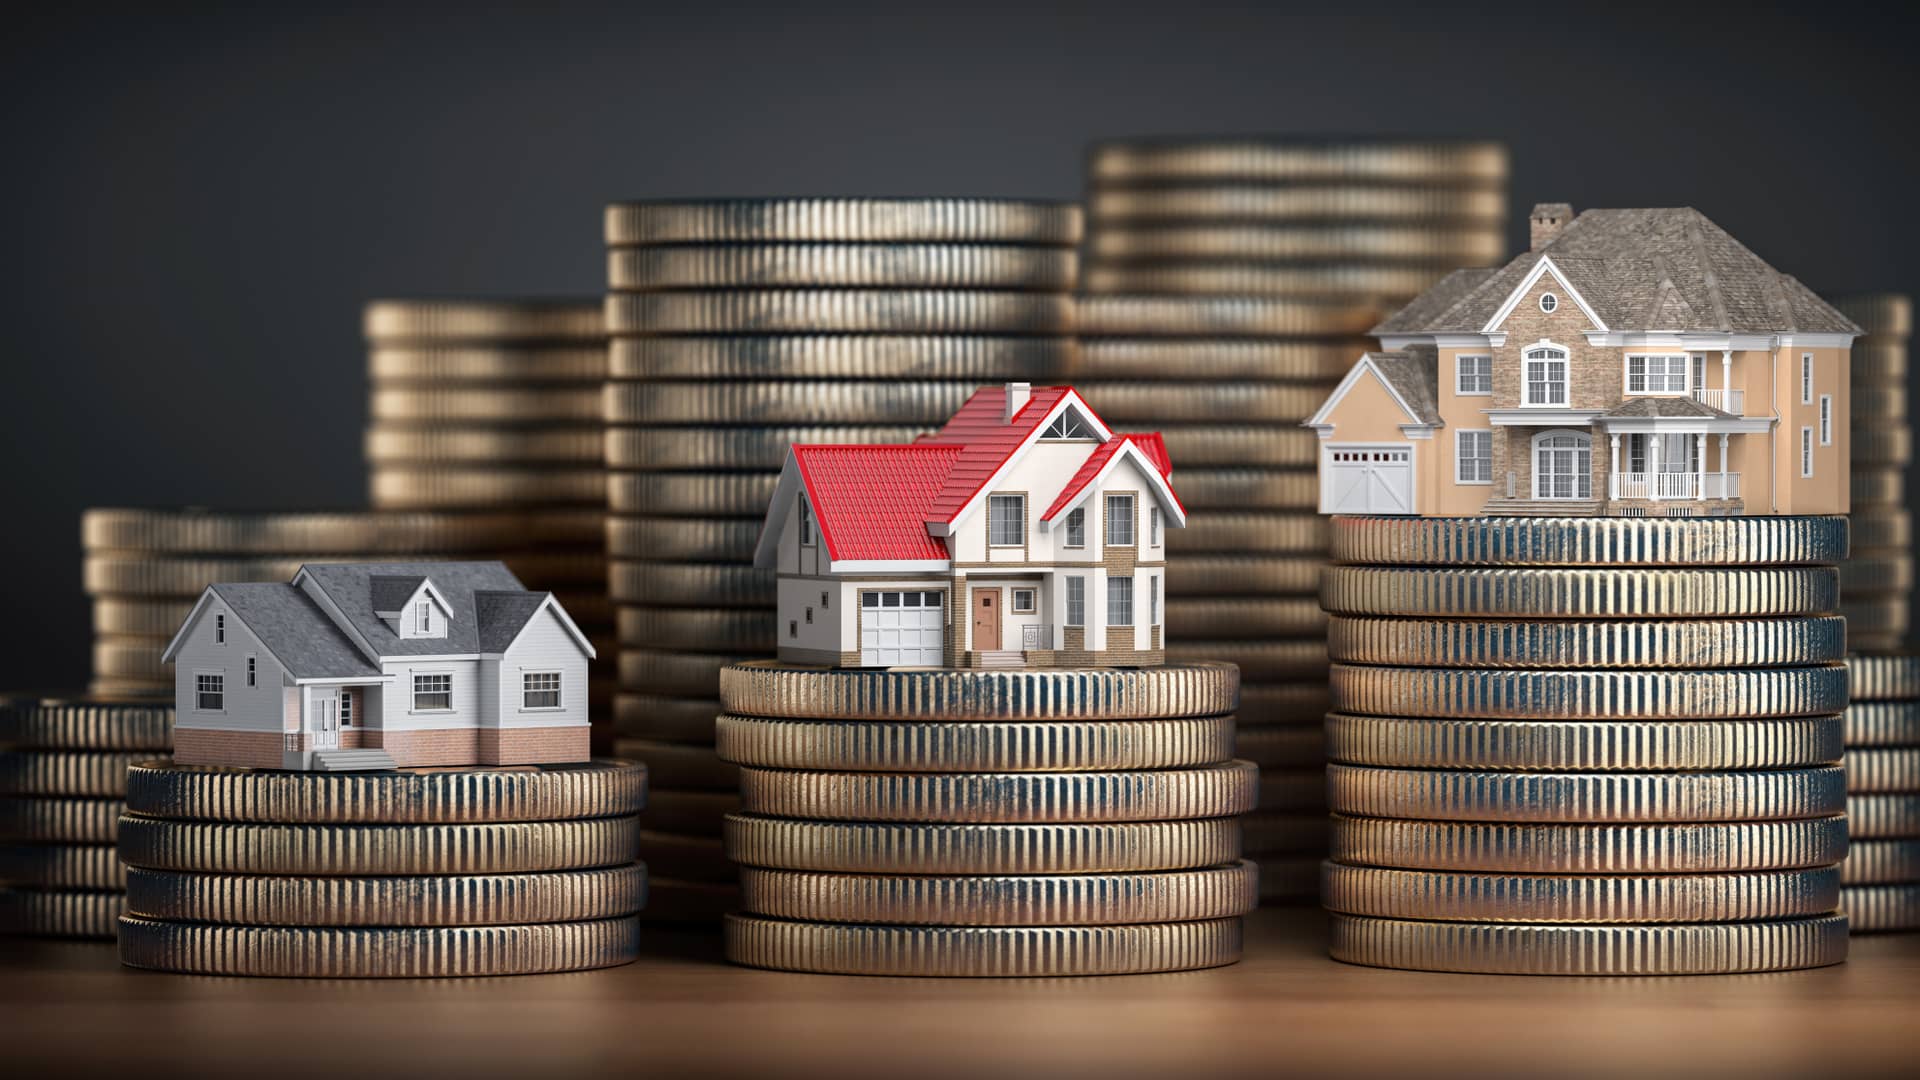 Pequeñas casas sobre torrres de dinero en metálico representan el importe mínimo a solicitar para conseguir una hipoteca